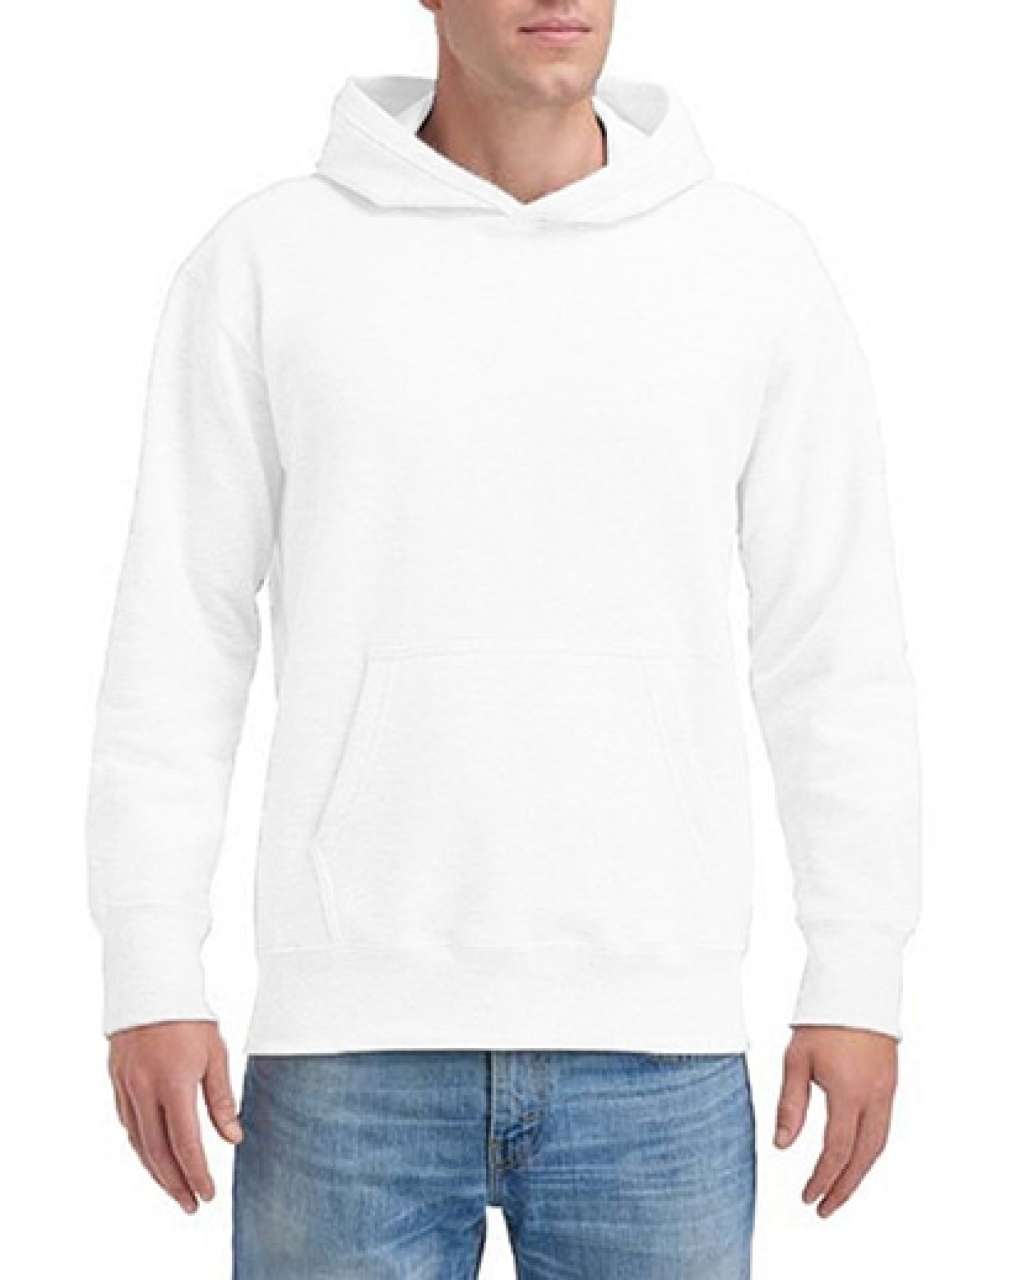 Gildan Hammer Adult Hooded Sweatshirt - Gildan Hammer Adult Hooded Sweatshirt - White